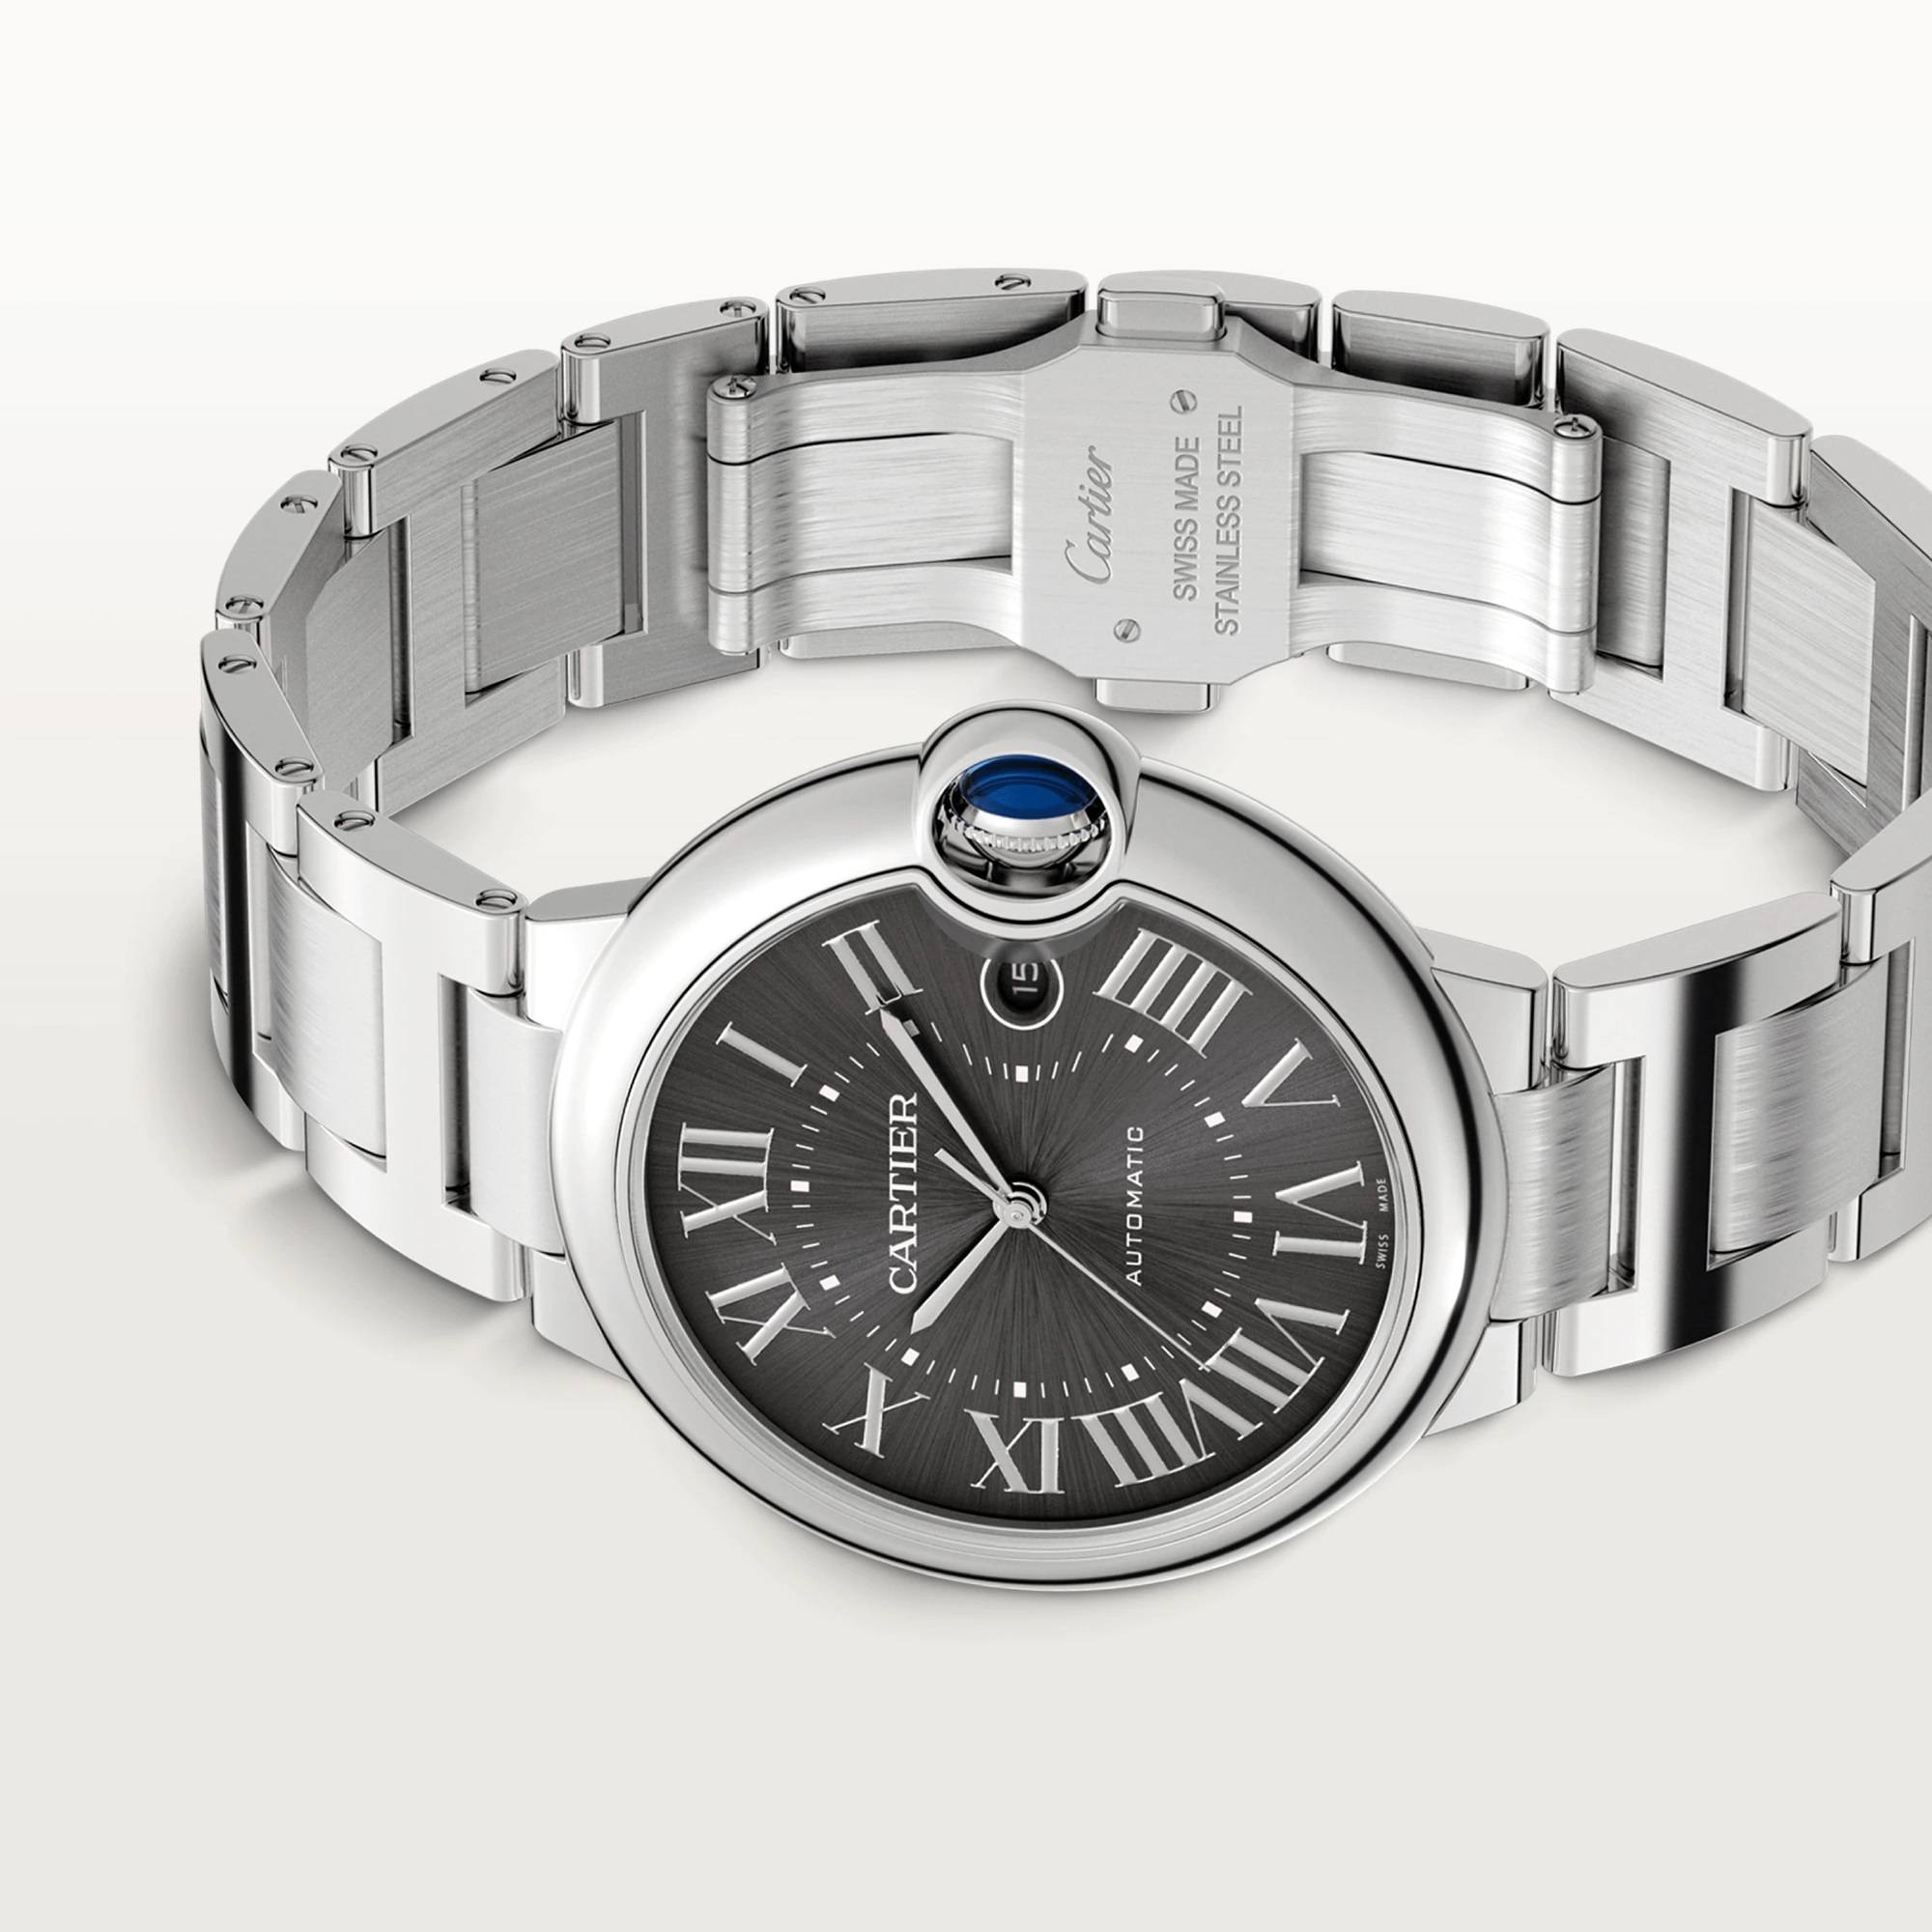 Ballon Bleu de Cartier Watch, Dark Gray Sunray-Brushed Dial, 40mm